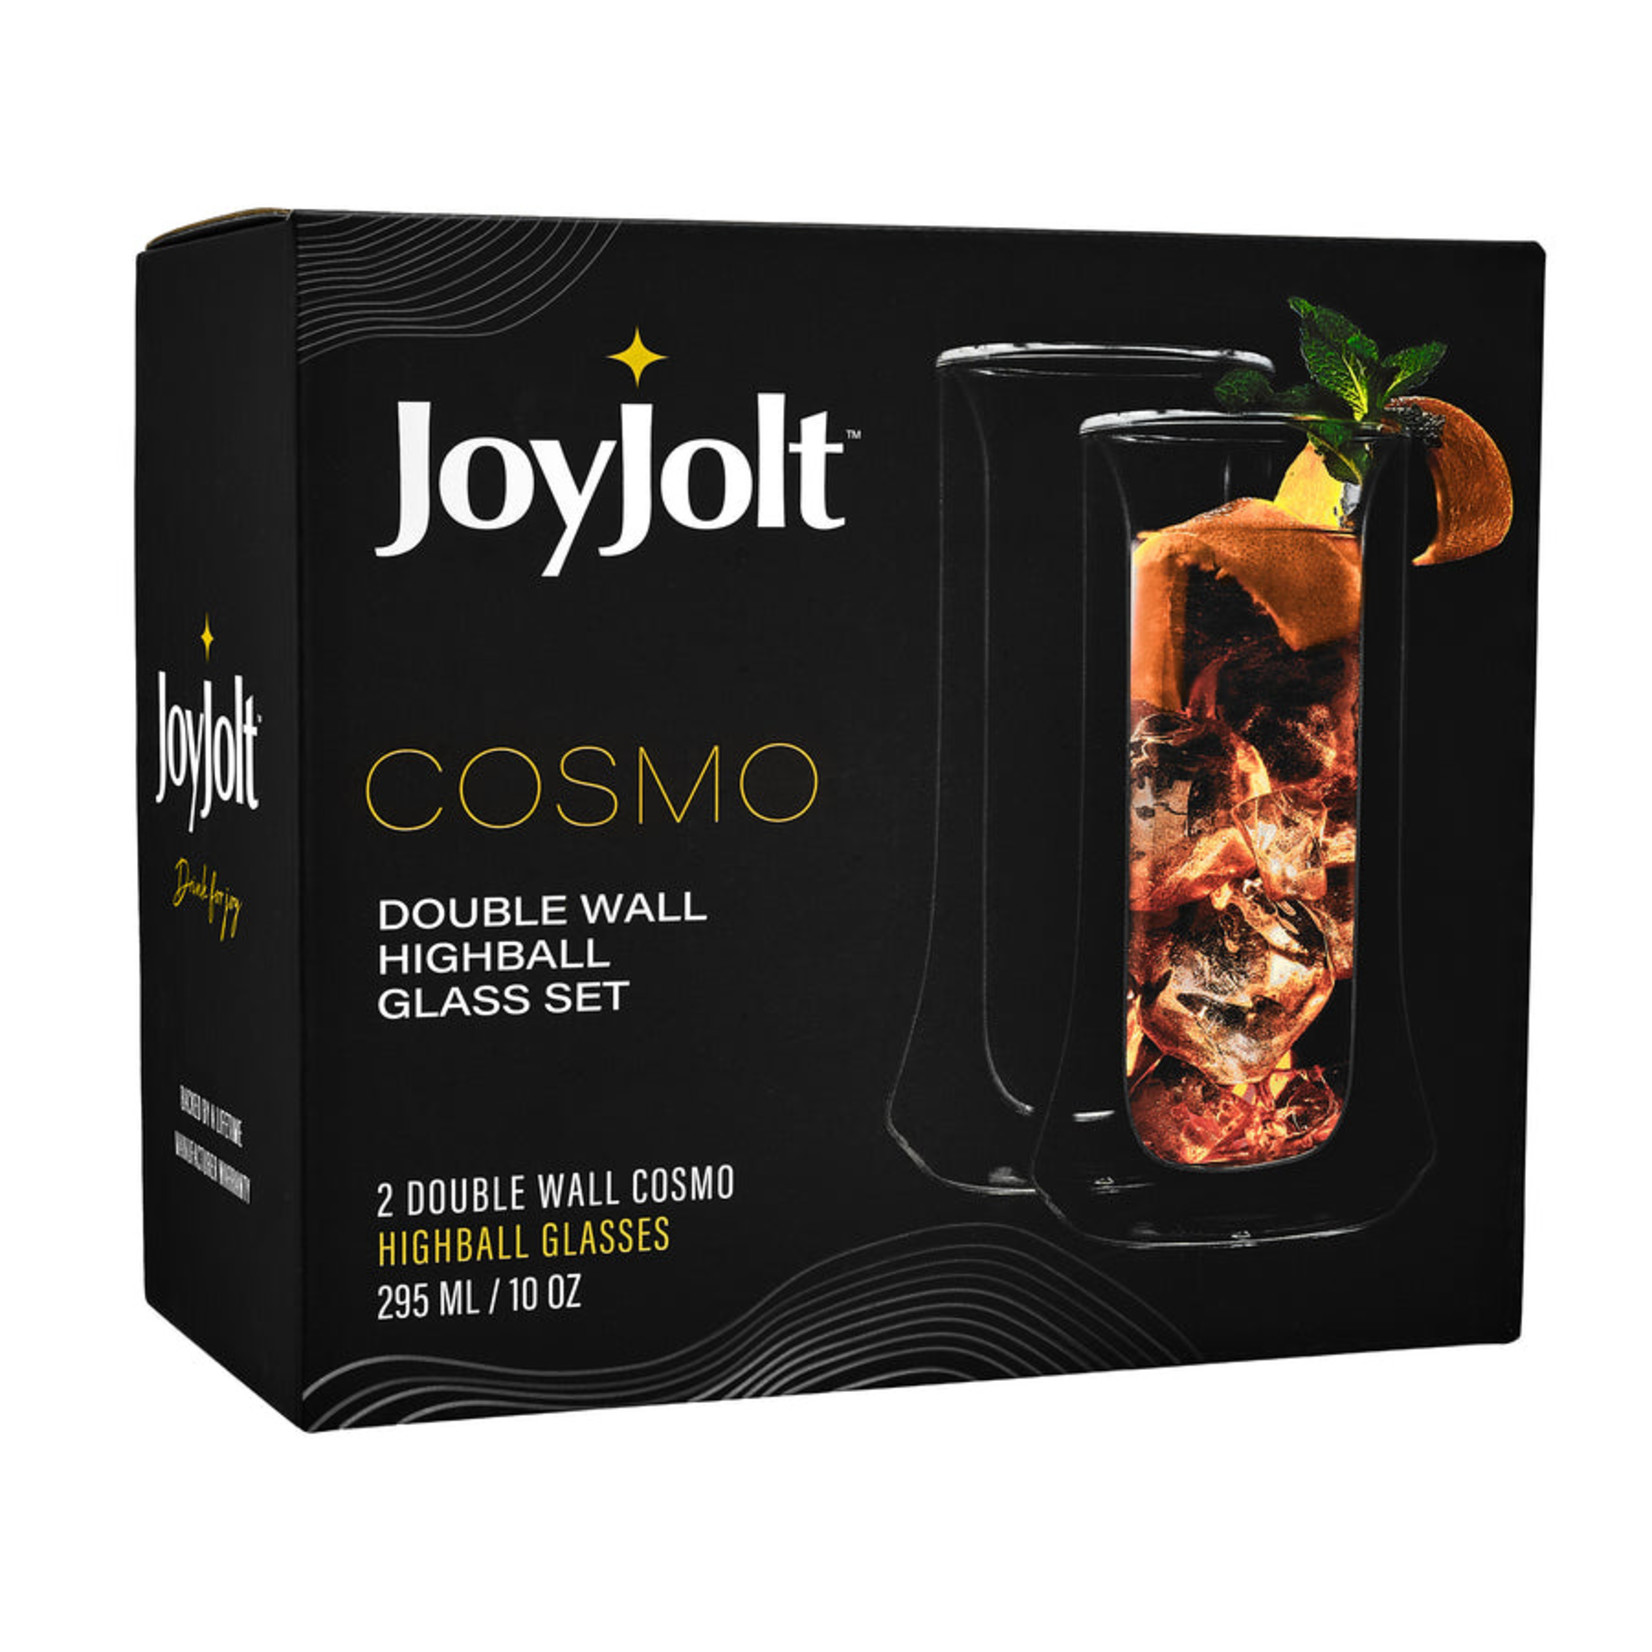 Joy Jolt Cosmos Double Wall Highball - set of 2